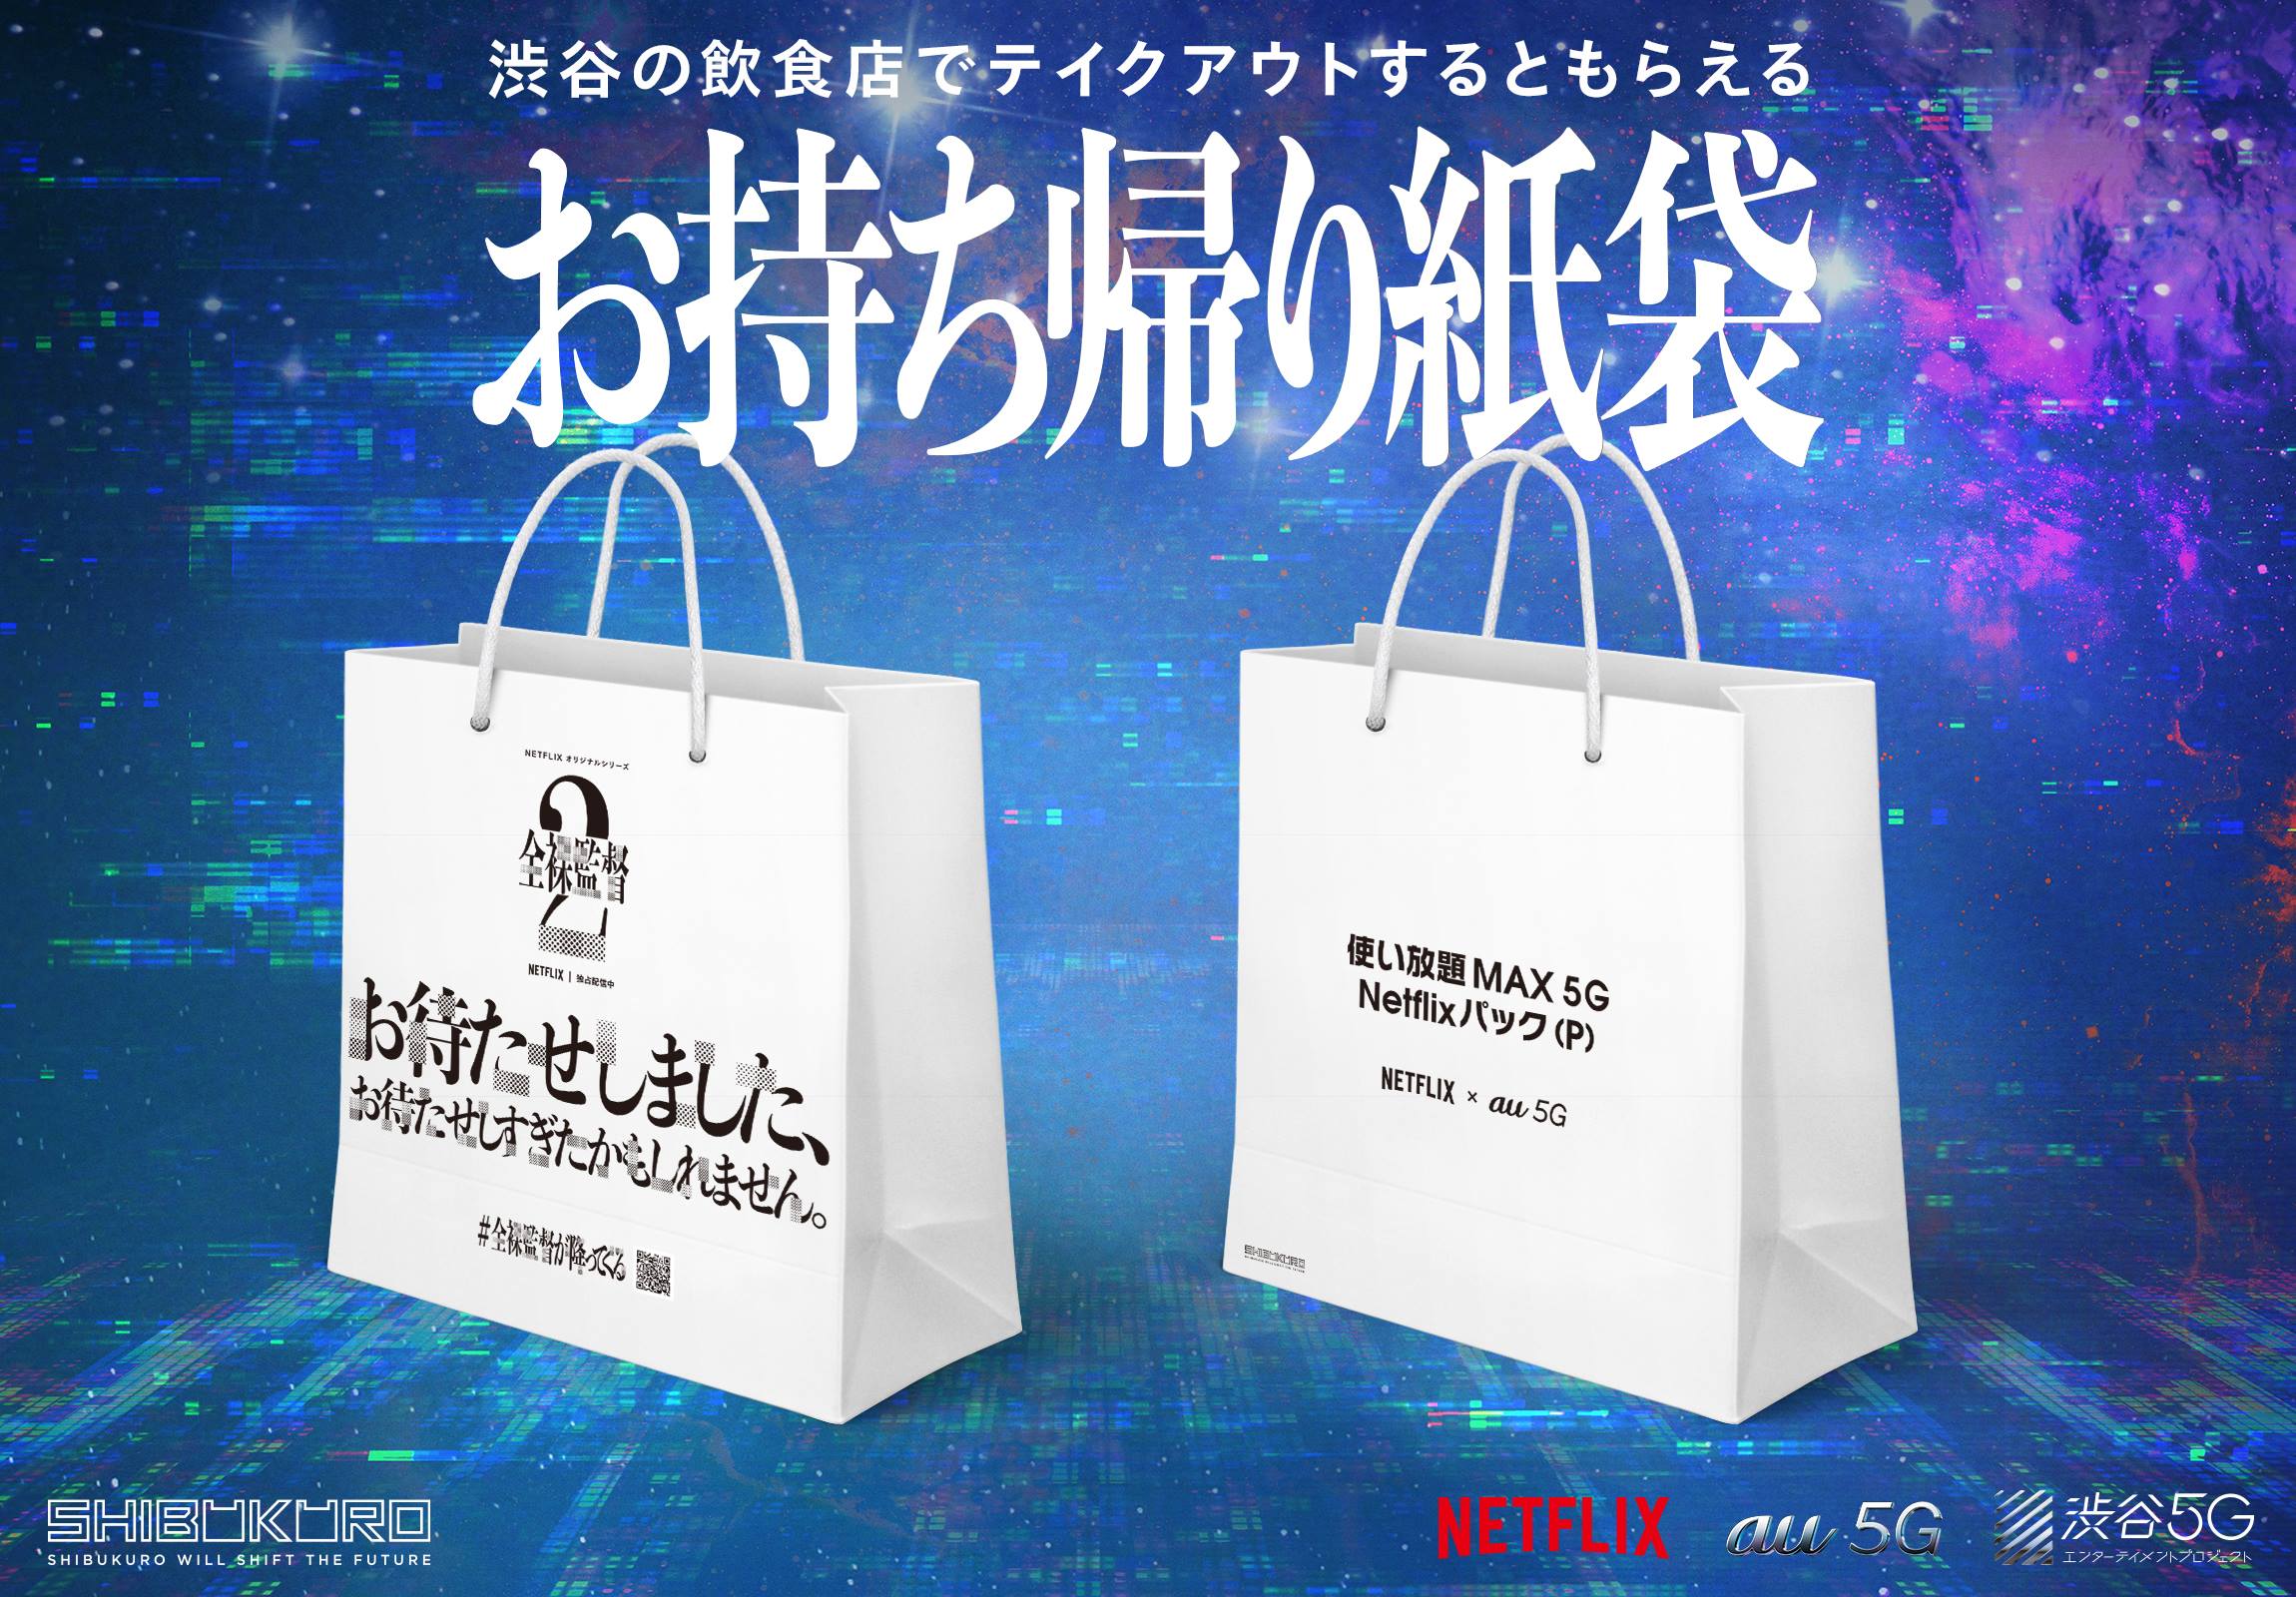 渋谷区公認プロジェクト Shibukuro と渋谷5gエンターテイメントプロジェクトがお持ち帰り紙袋を無償提供し 渋谷の飲食店を応援 一般社団法人渋谷 未来デザインのプレスリリース